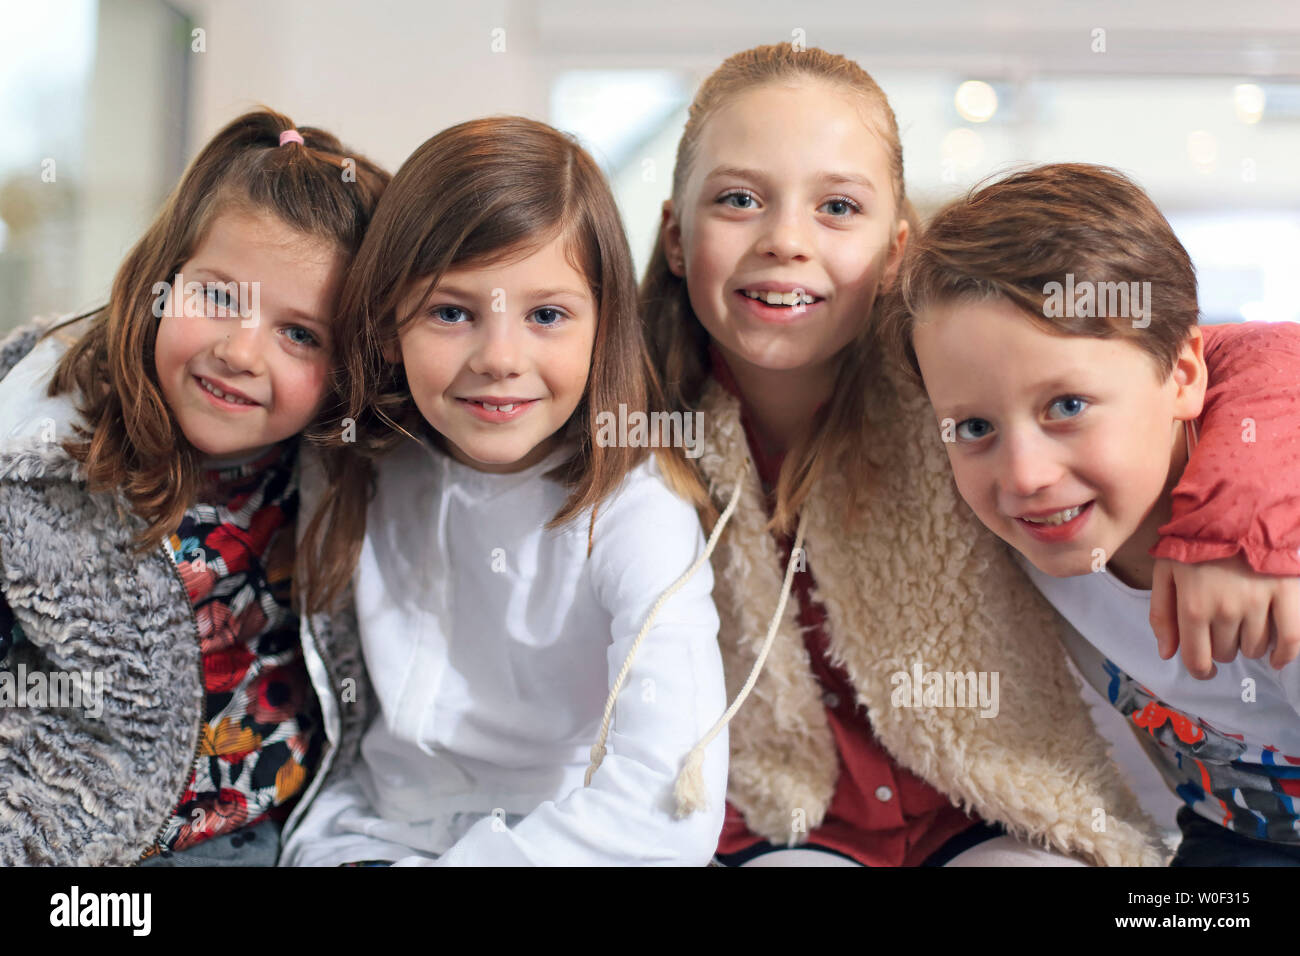 4 happy children Stock Photo